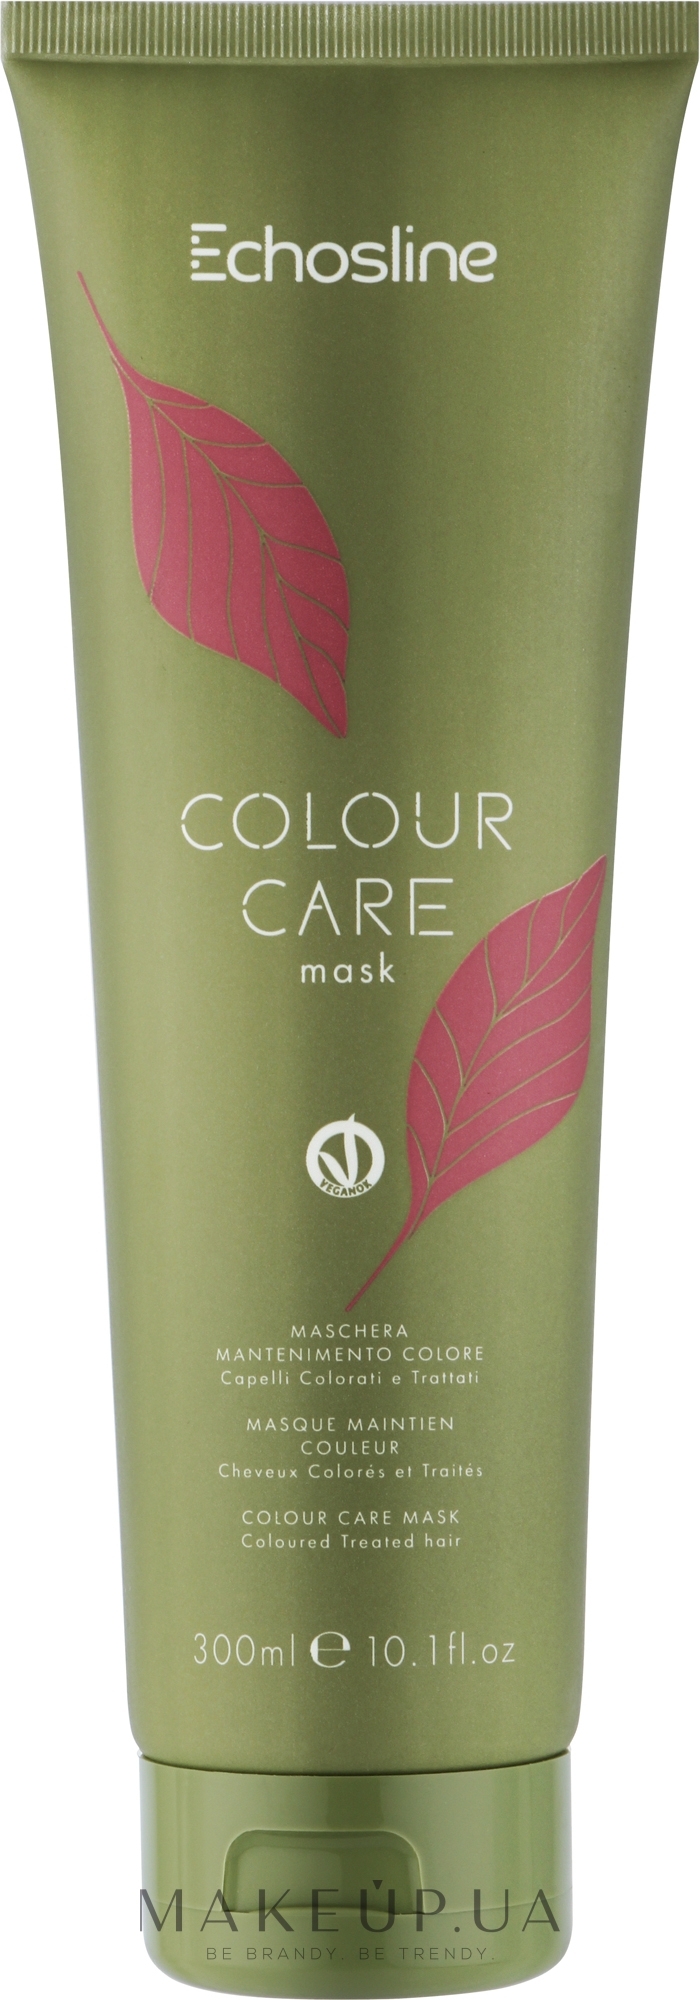 Маска для поддержания цвета волос - Echosline Colour Care Mask — фото 300ml